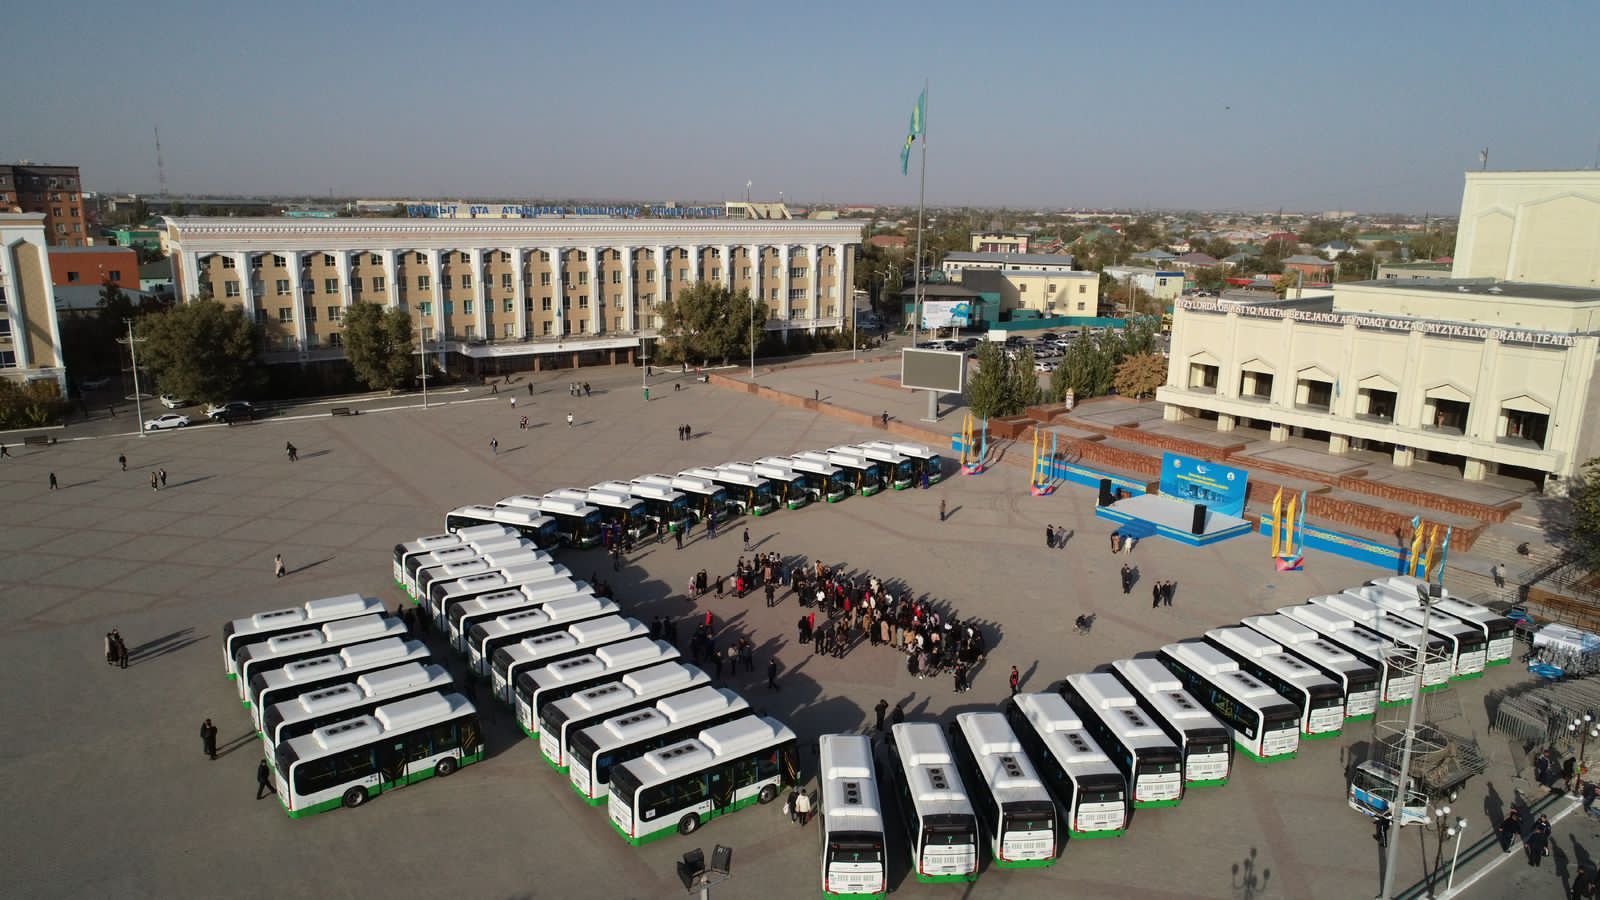 18 новых объектов планируют сдать в эксплуатацию в Кызылординской области